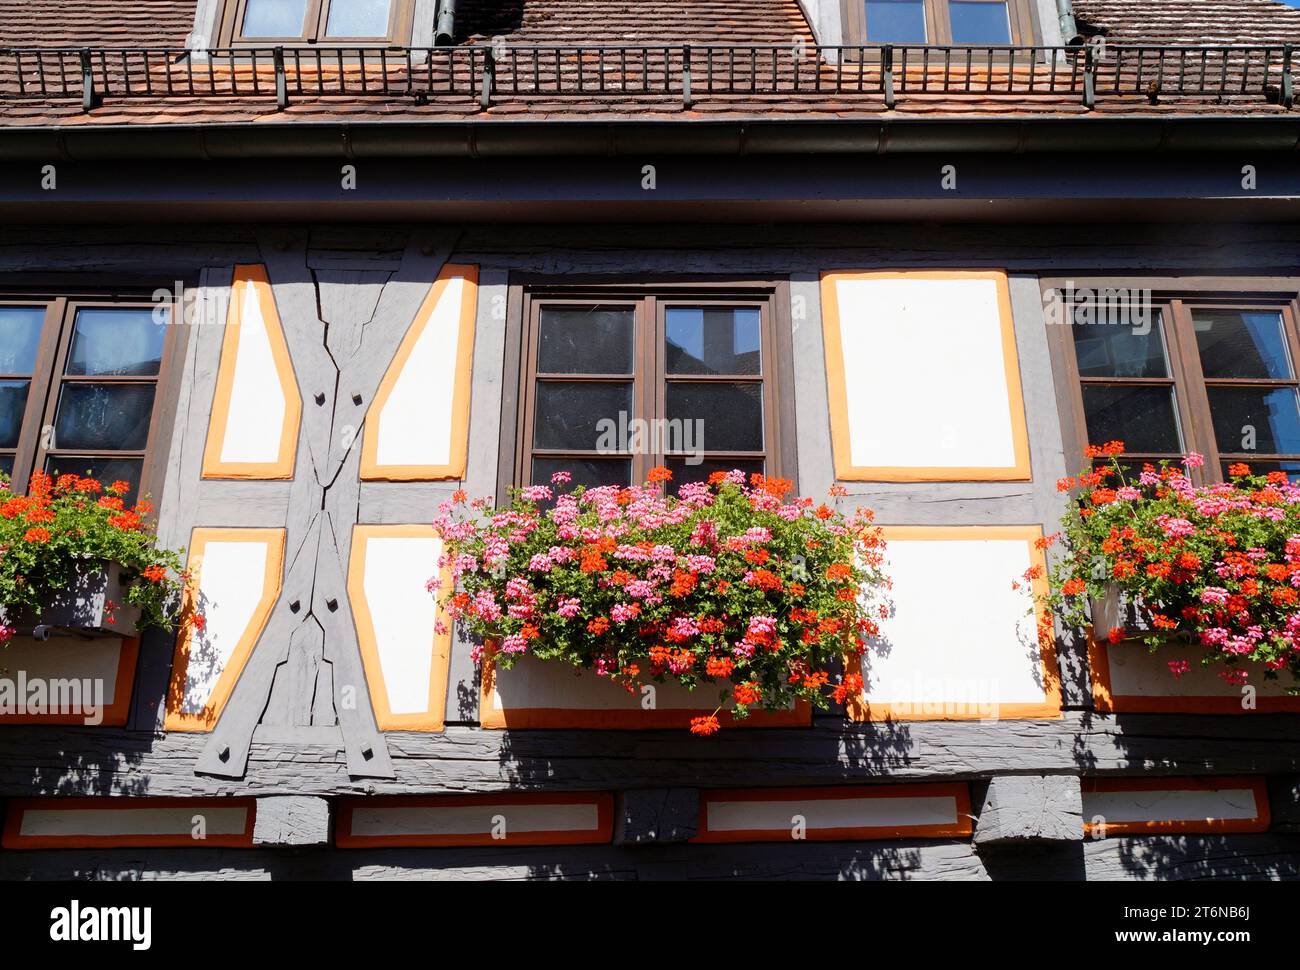 Hermosa casa blanca histórica alemana de entramado de madera tradicional con geranios rojos iluminados por el sol en la ventana (Ulm, Alemania) Foto de stock